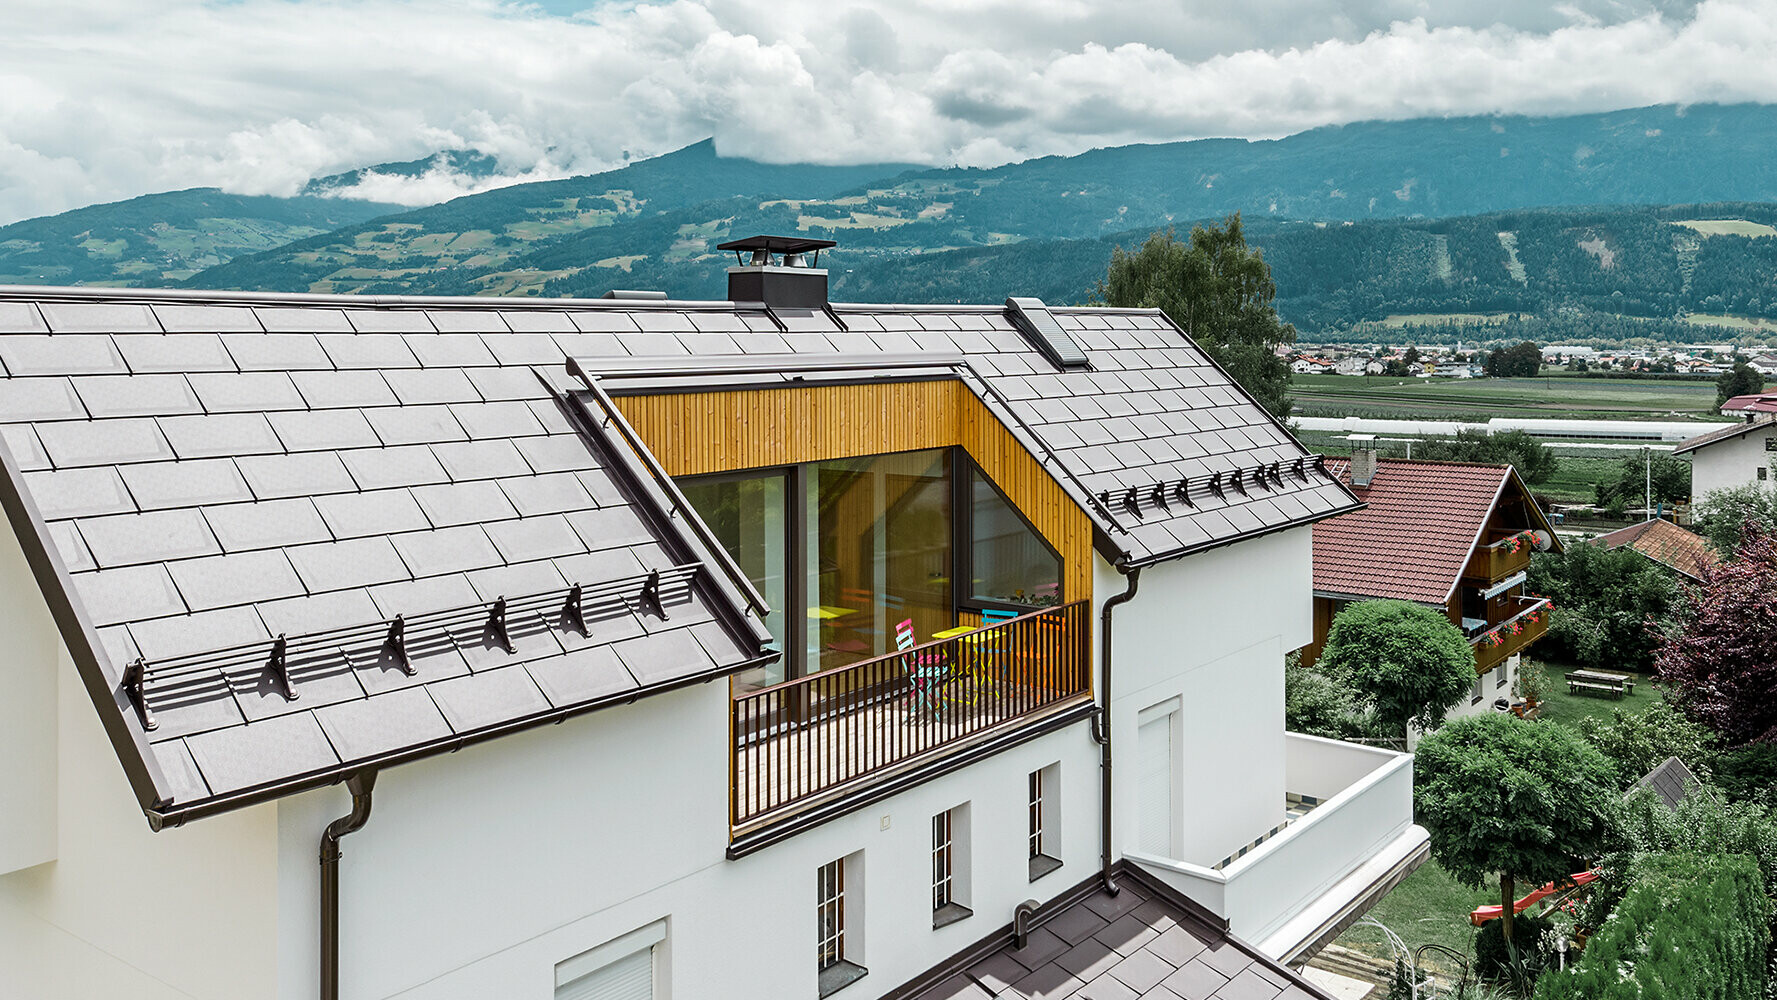 Boligbyggeri inddækket med aluminiumstagplade R.16 i nøddebrun af PREFA med stor altan og lys pudset facade.